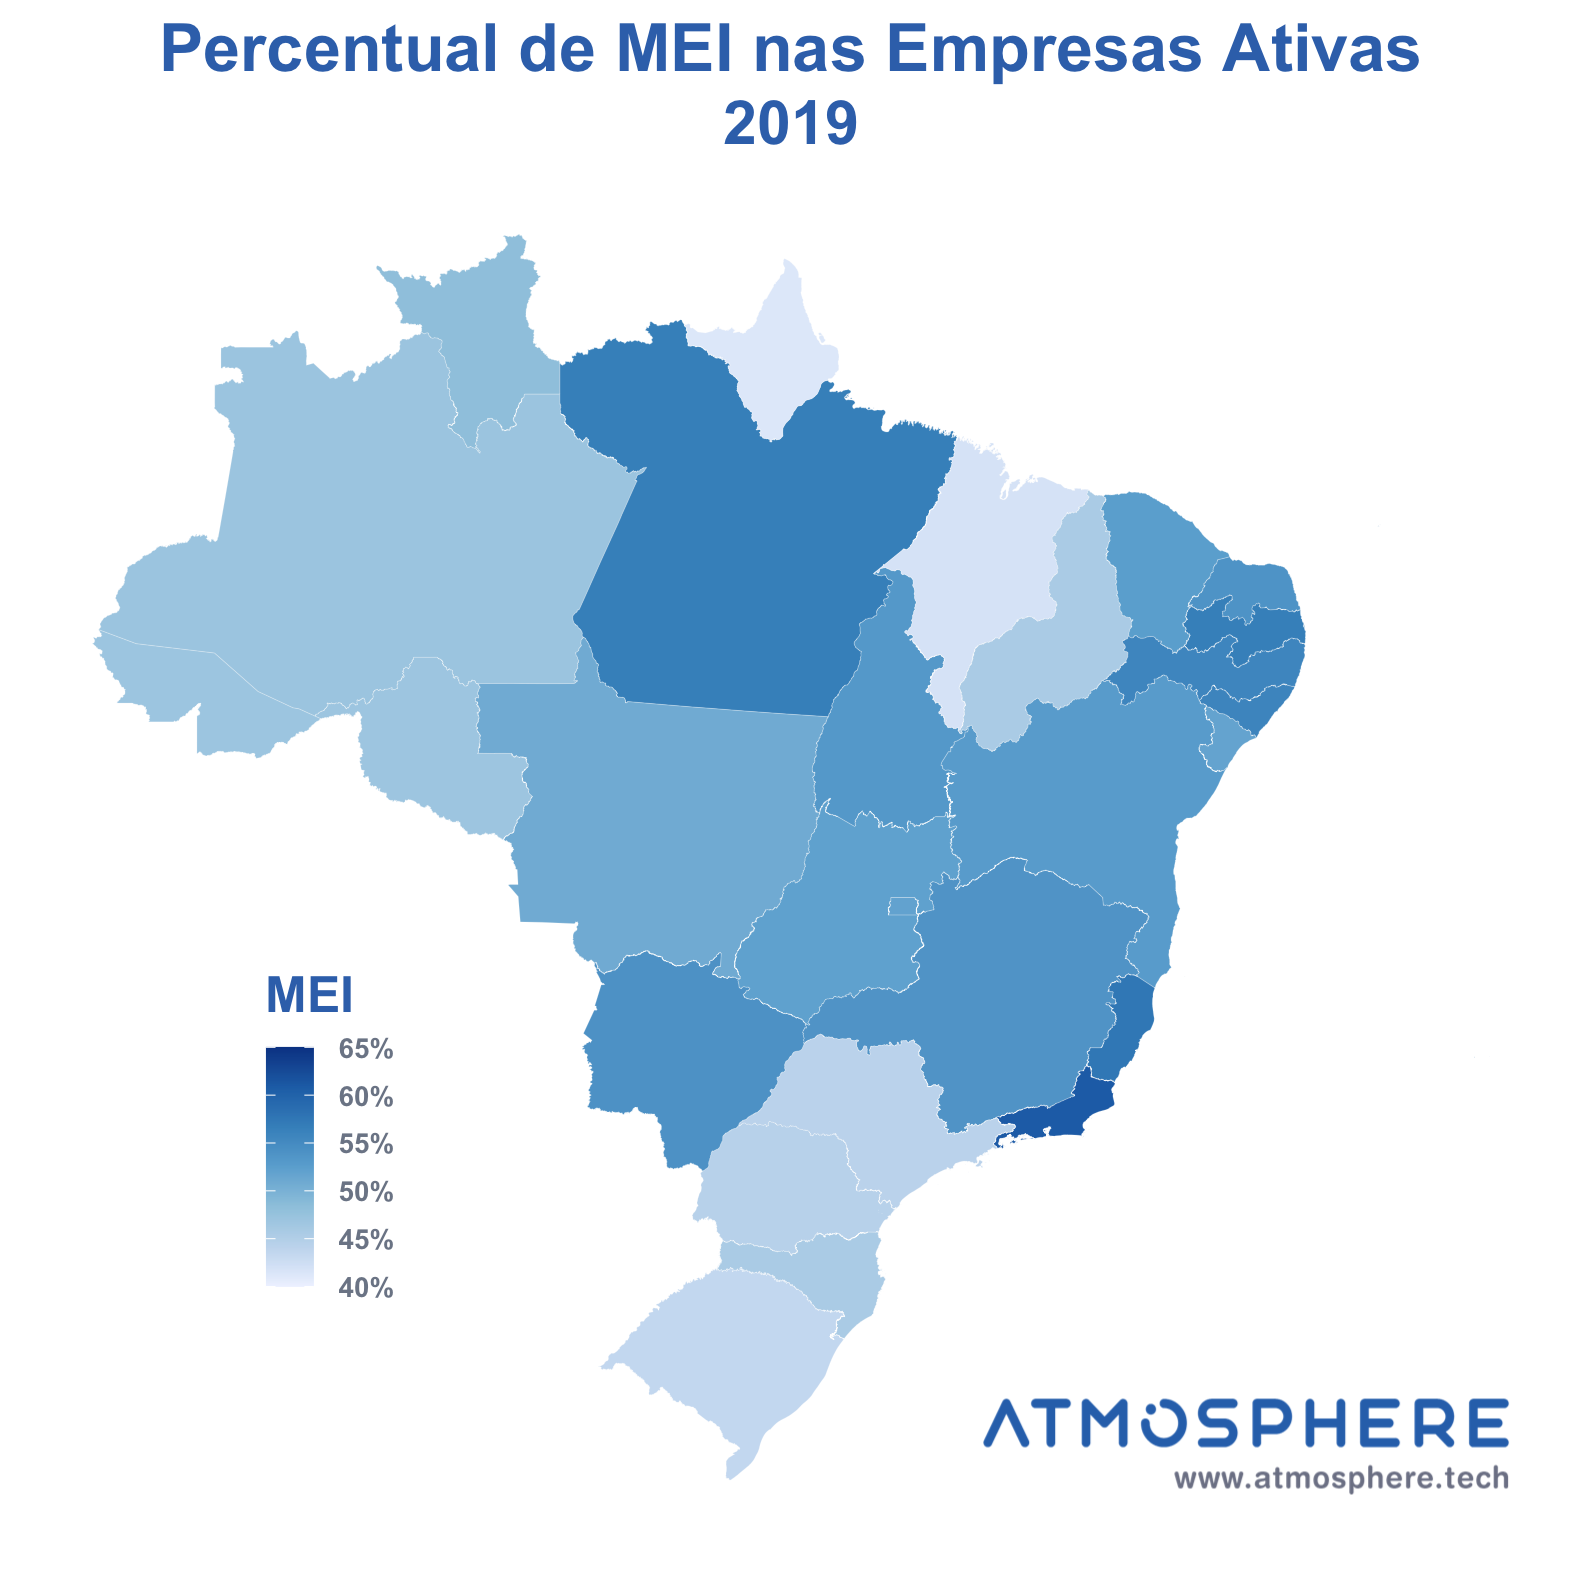 Atmosphere Mapa de MEI Ativos percentual por estado em 2019